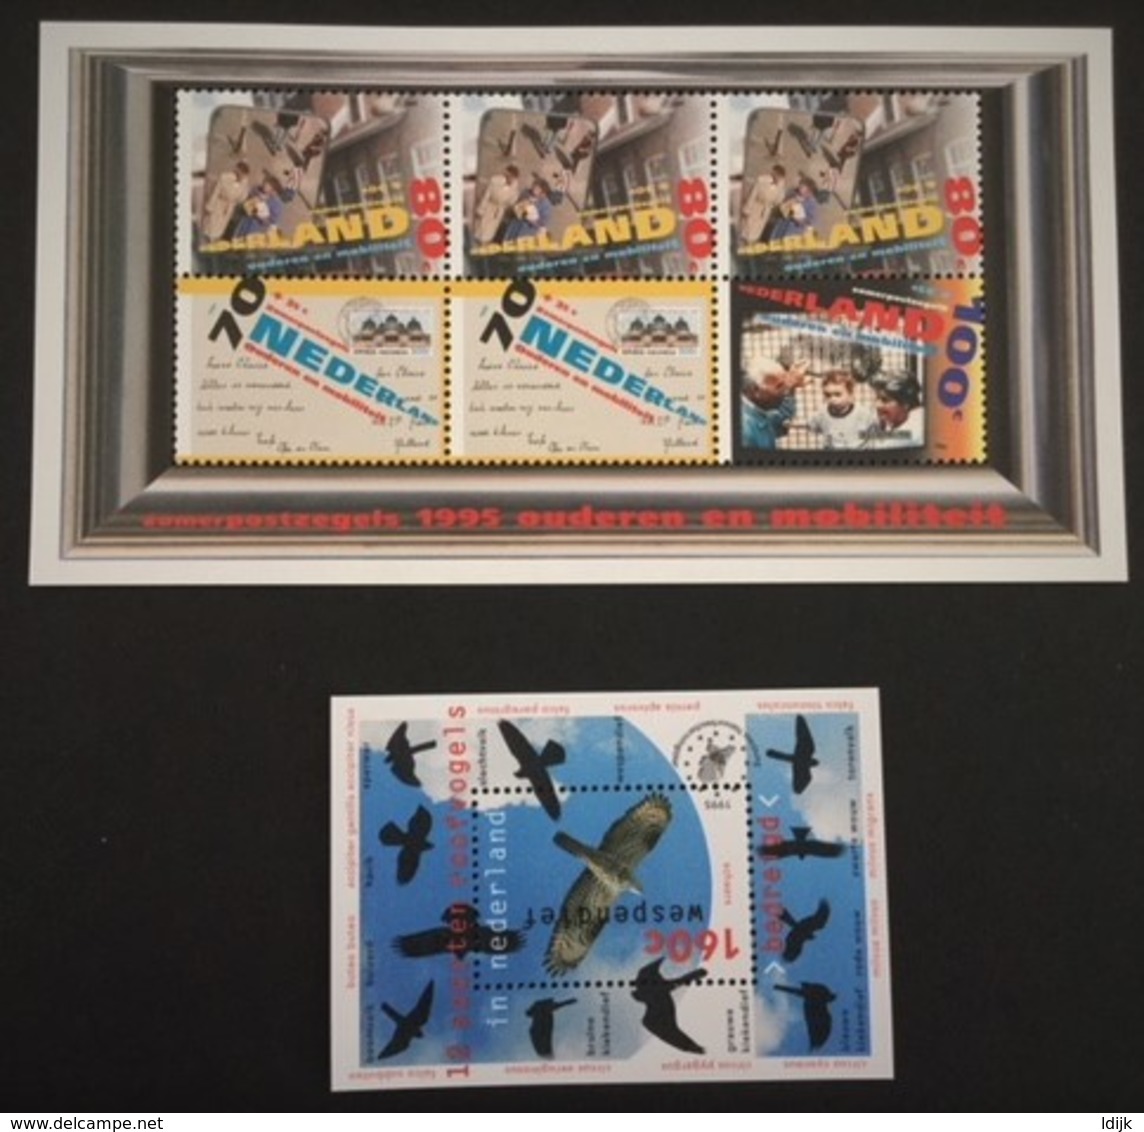 1995 Jaarcollectie Postzegels NVPH  1630-1663**) - Volledig Jaar